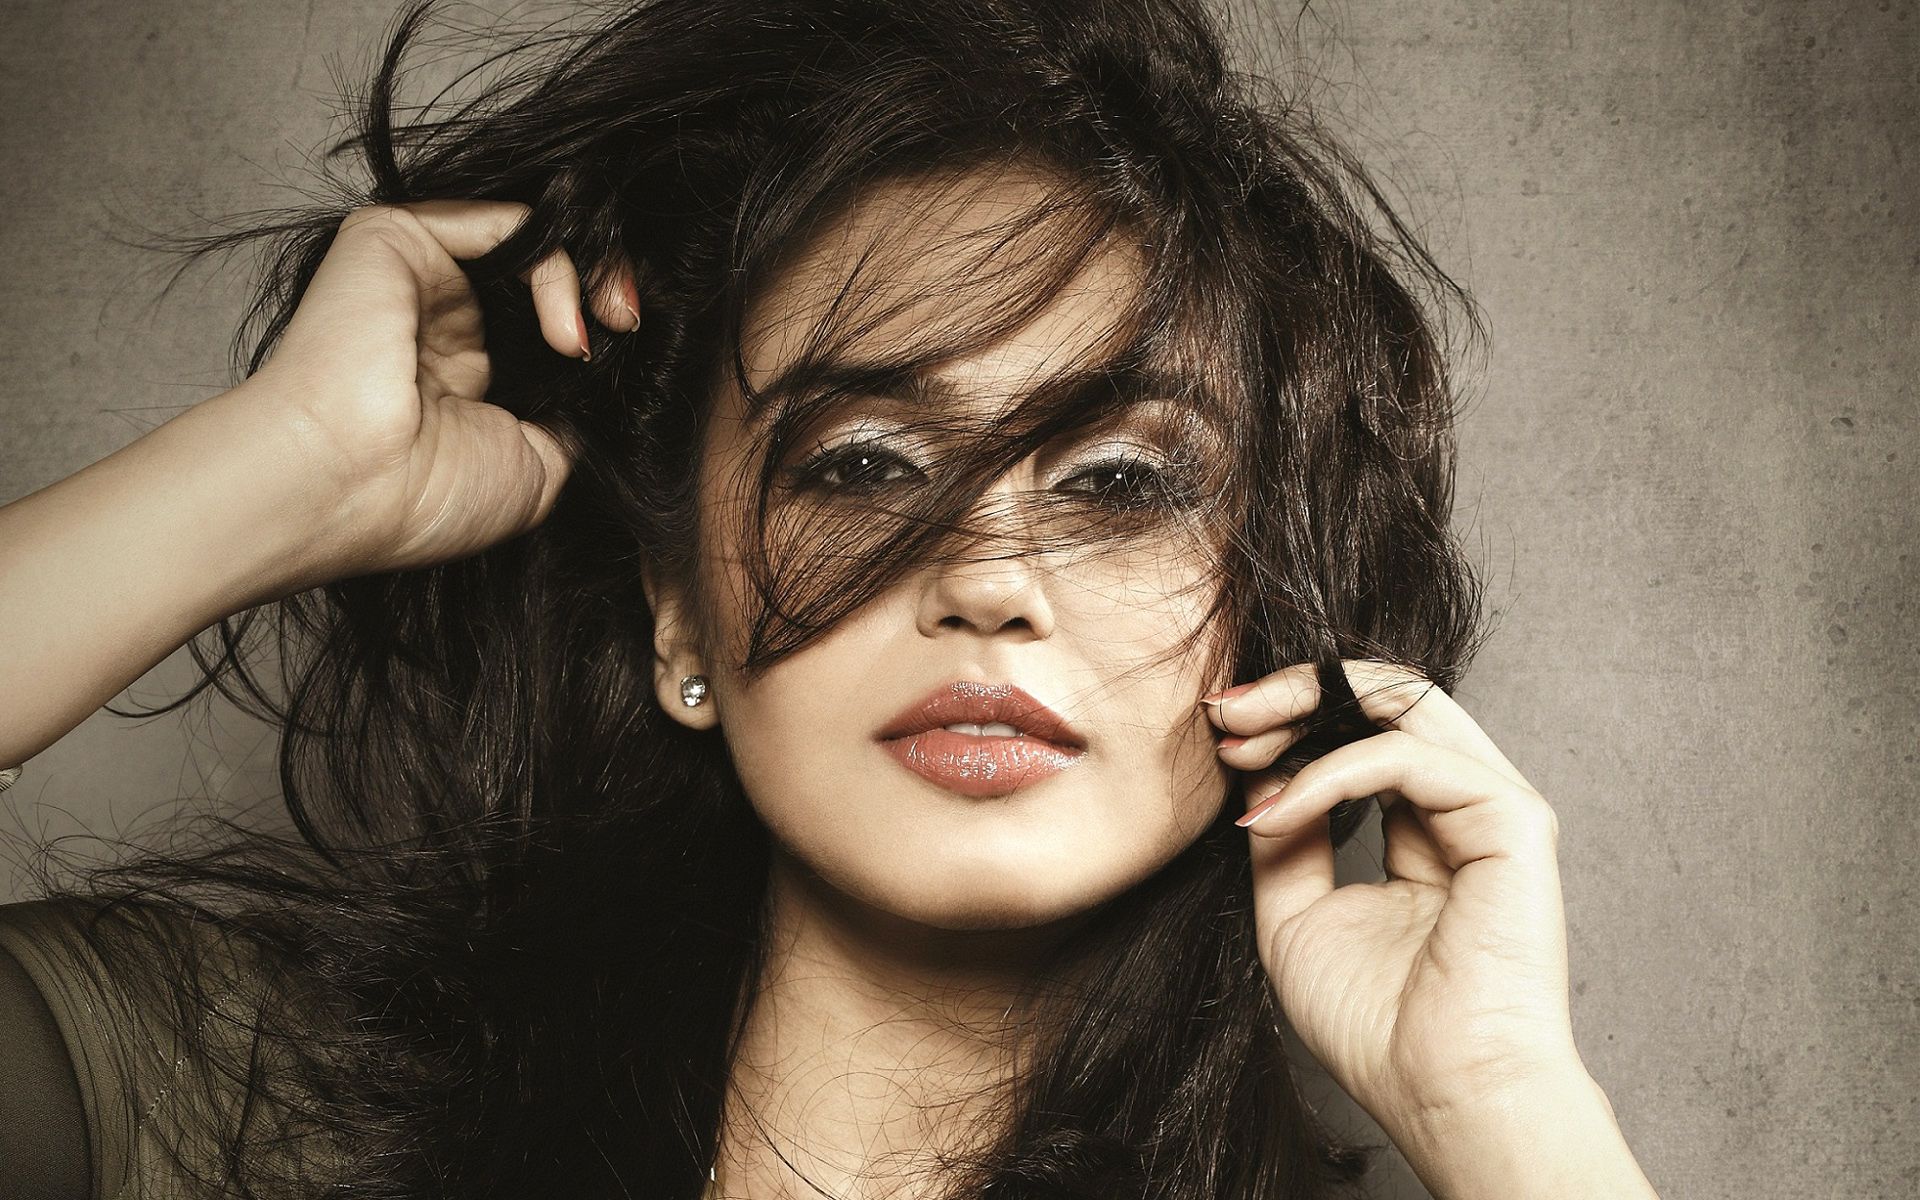 Huma Qureshi Messy Hair Close up wallpaper iPhone 4